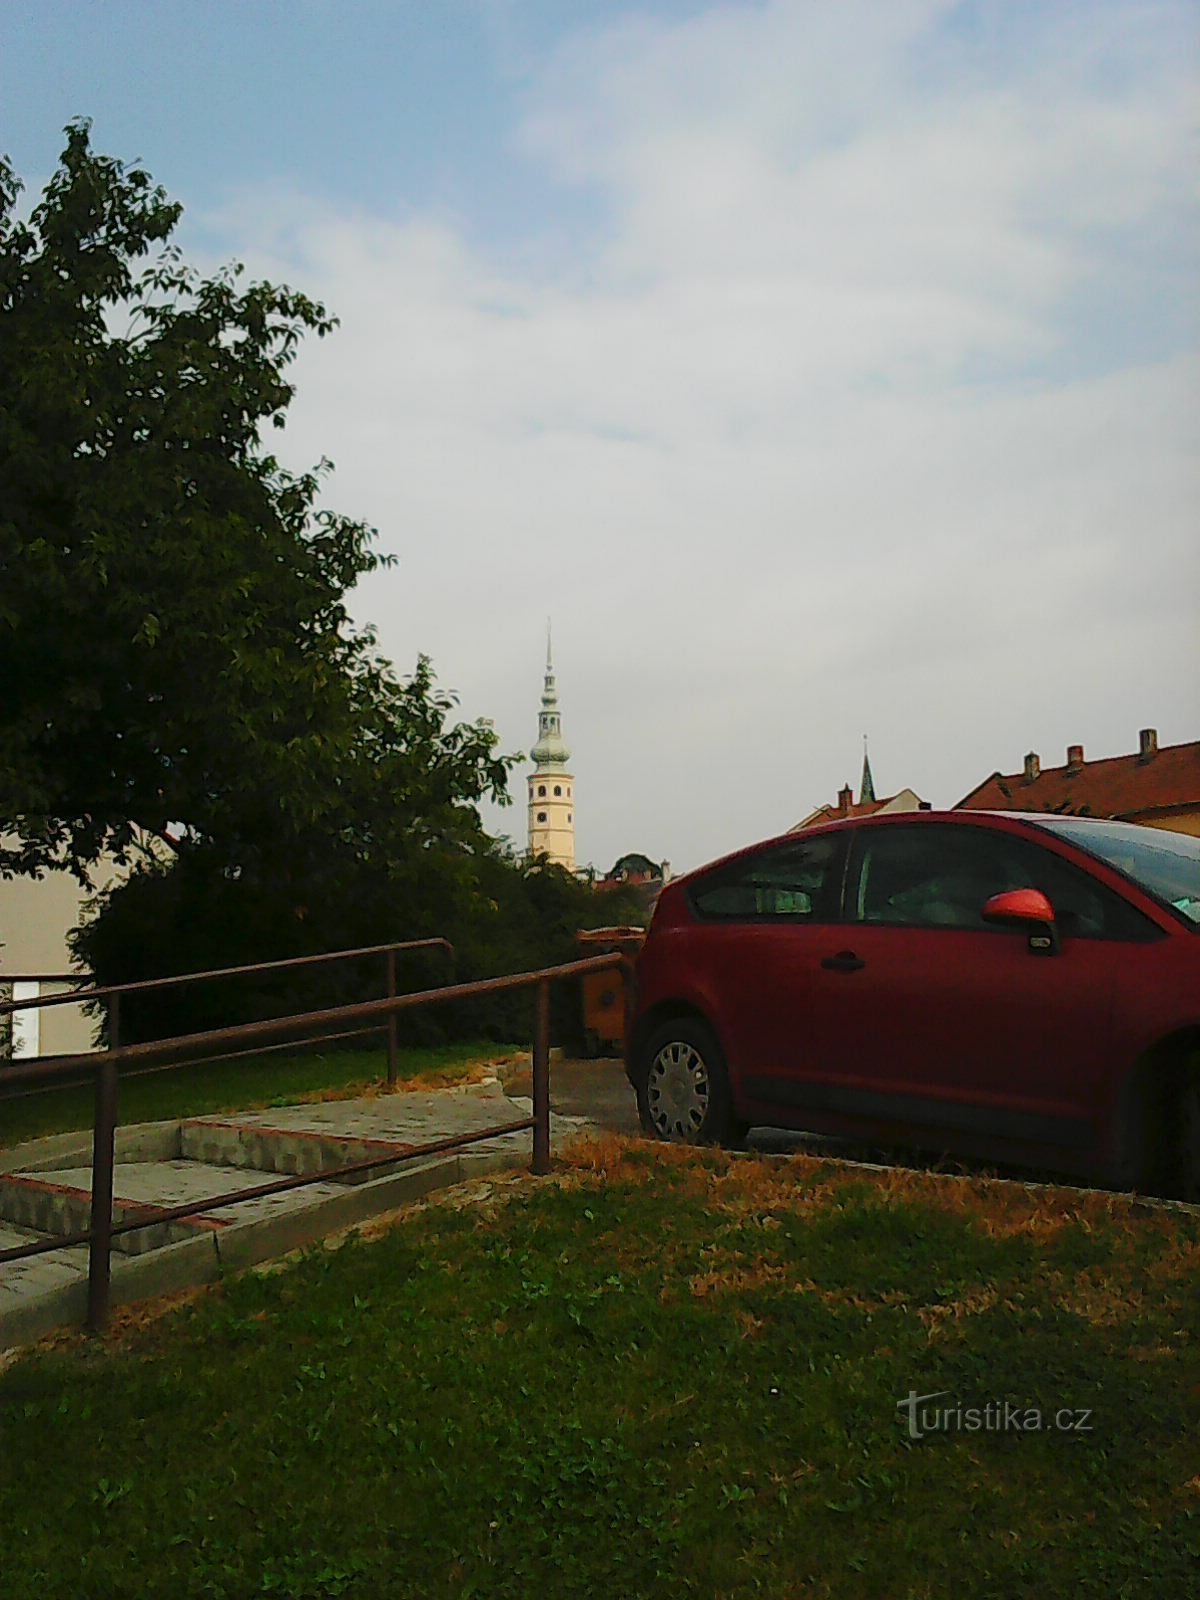 Tháp của lâu đài Tovačovské có thể nhìn thấy từ xa - điểm tham chiếu chính của tôi :)